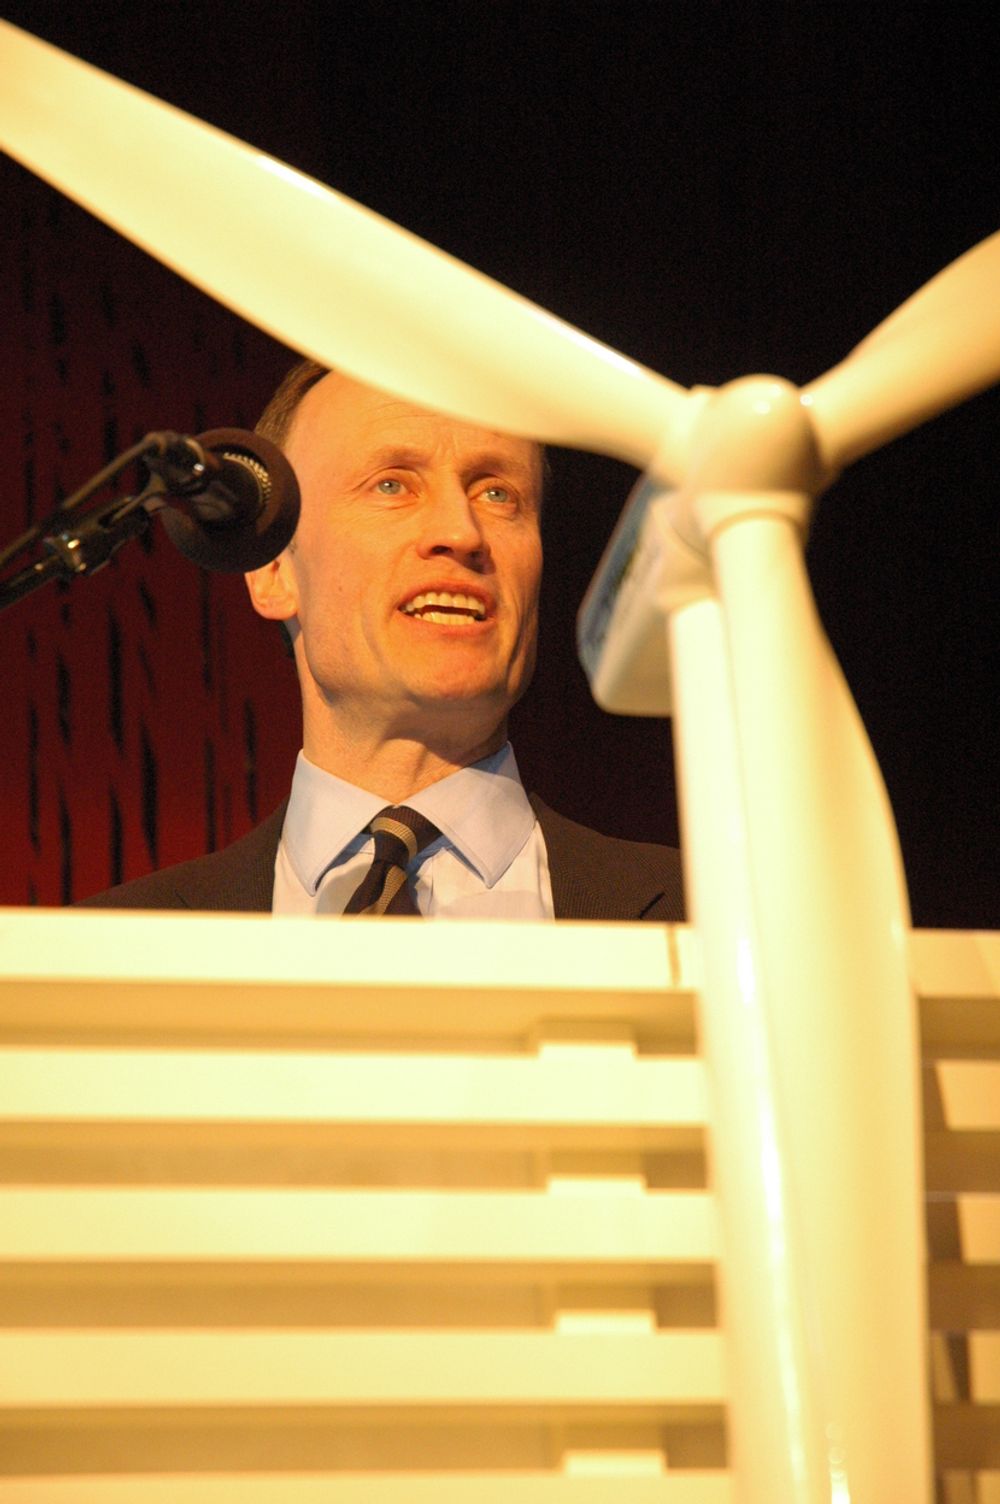 KREVER FORUTSIGBARHET: Enova-direktør Nils Kristian Nakstad ønsker å bygge ut 15 terawattimer vindkraft innen 2020, noe som vil kreve en investering på 25 milliarder kroner. Han mener vindbransjen trenger forutsigbarhet.